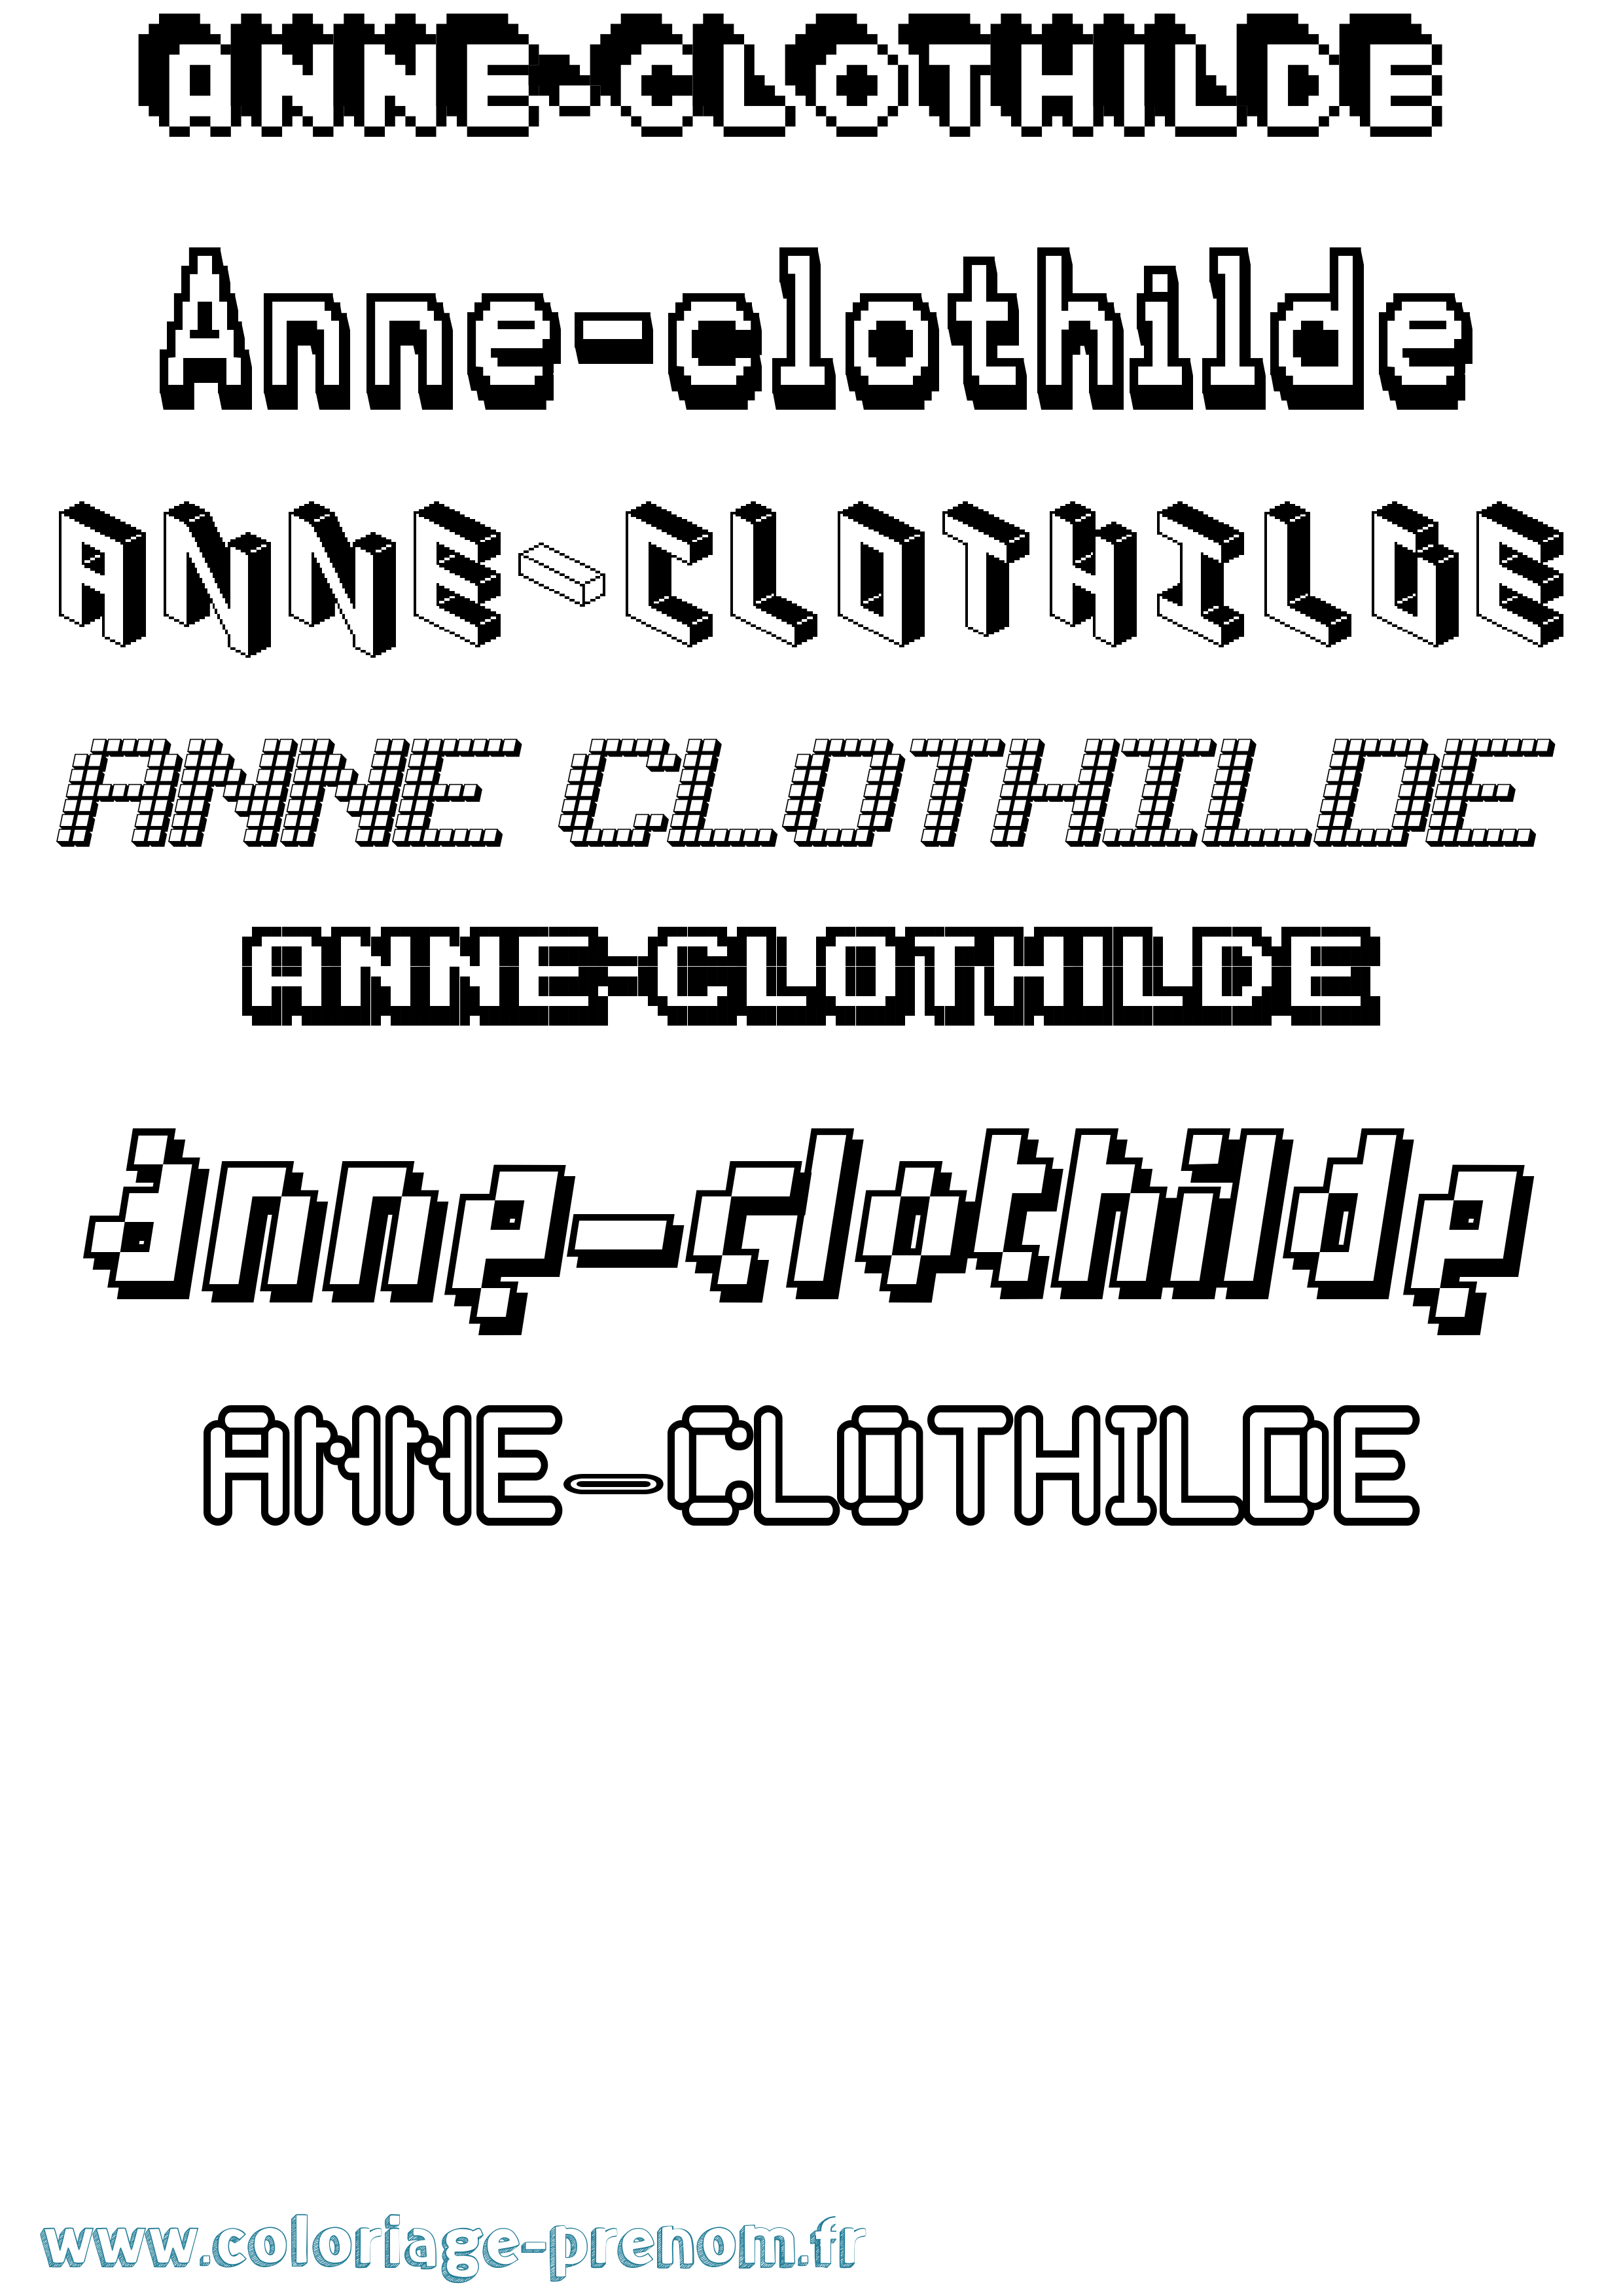 Coloriage prénom Anne-Clothilde Pixel